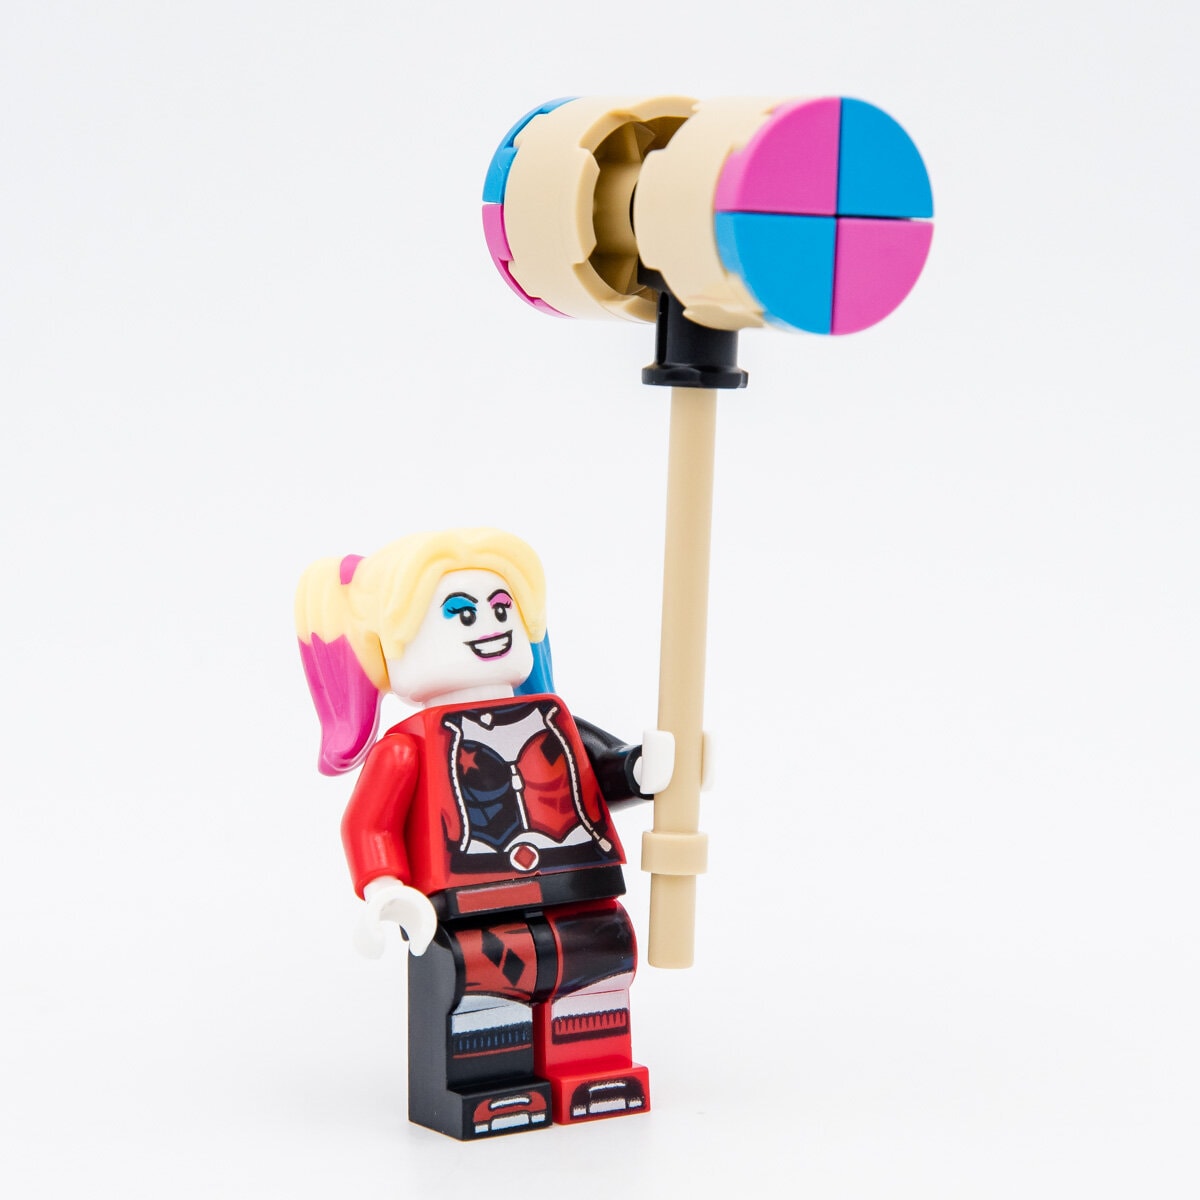 Montre figurine Harley Quinn de LEGO Batman 9009310 pour enfant 